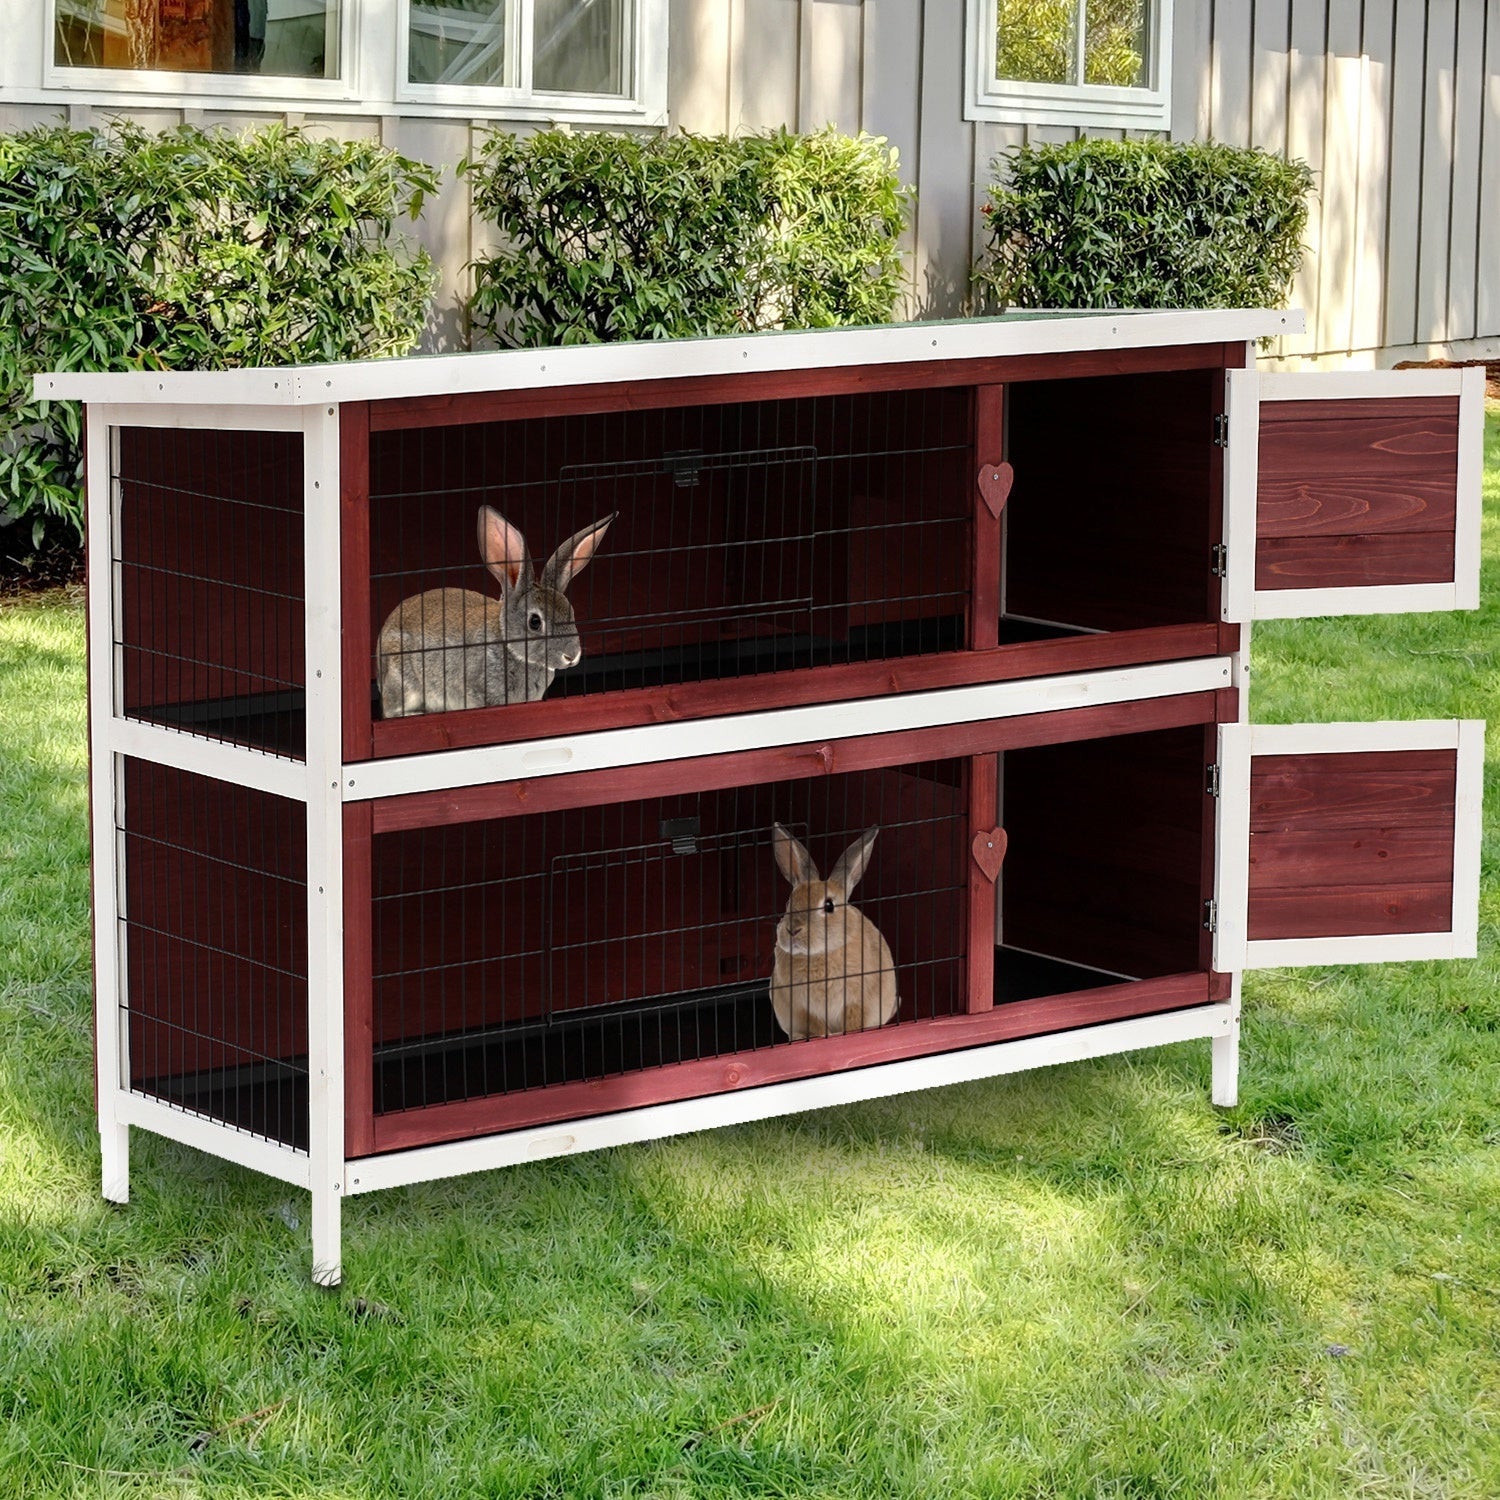 Two-Tier Double Decker Wooden Rabbit Hutch Pet Cage 136.4Lx50Wx93H cm-Brown/White, PawHut,